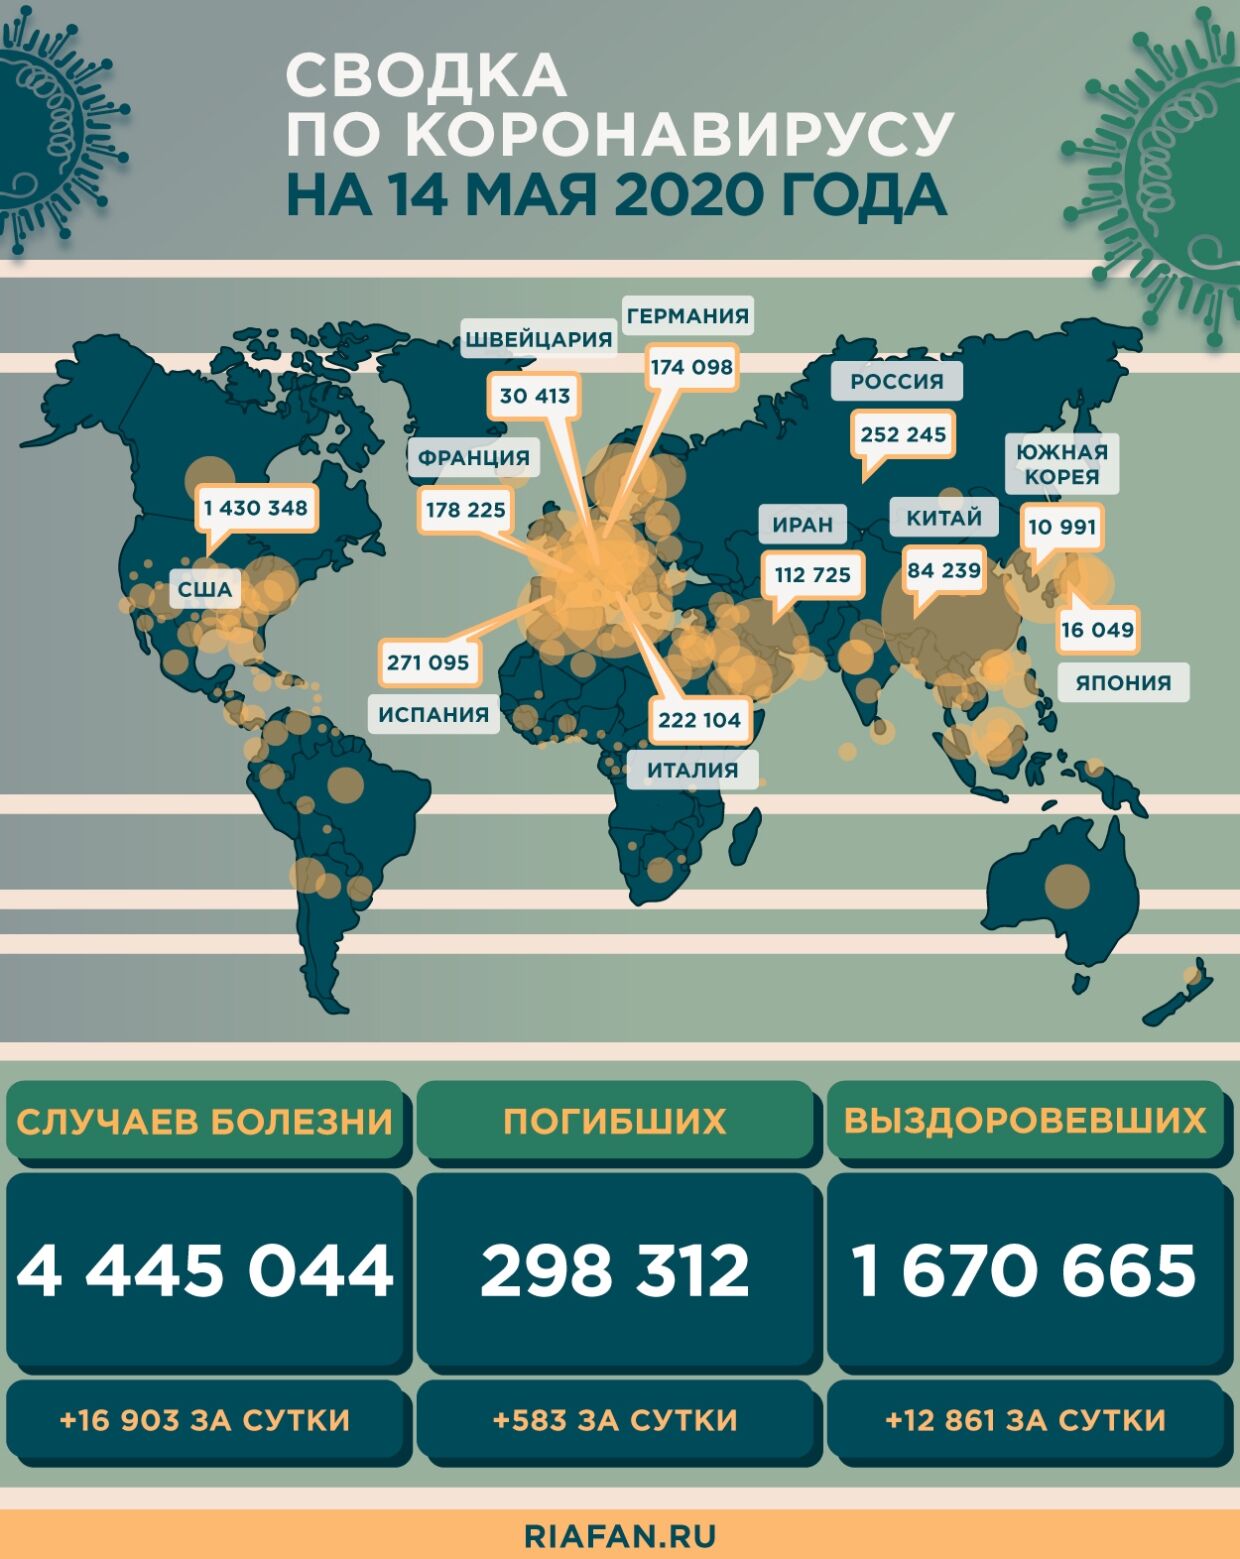 Помогающим в борьбе с пандемией COVID-19 компаниям в РФ могут дать налоговые льготы